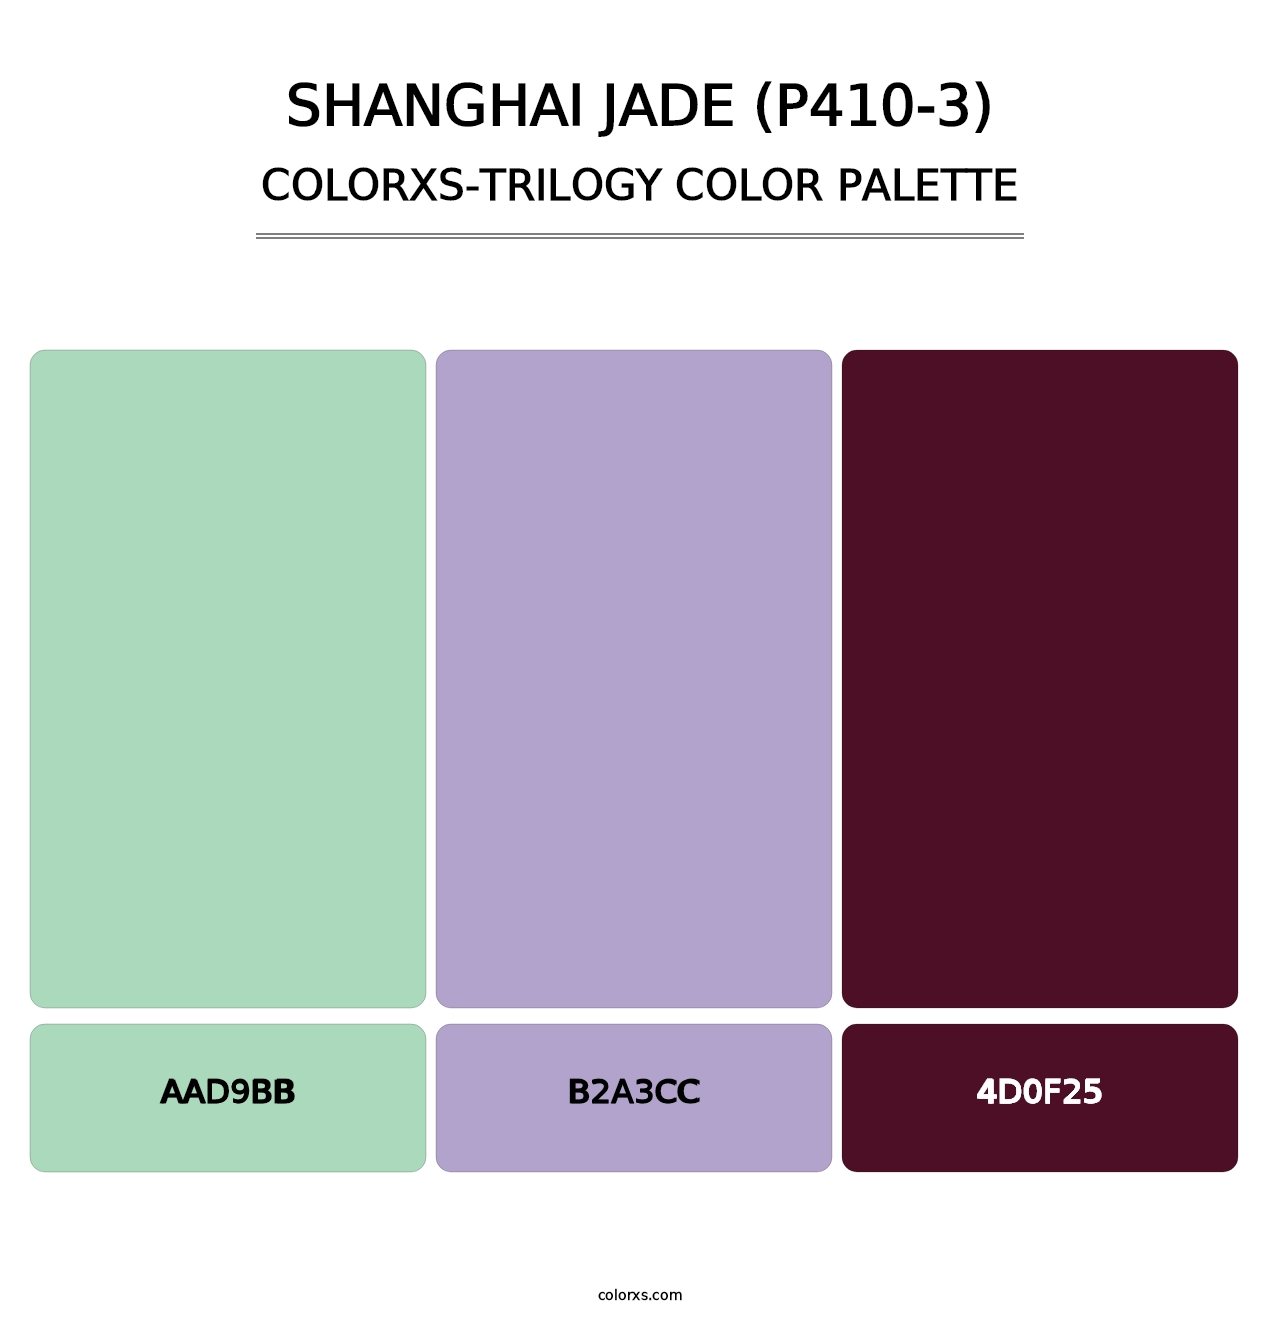 Shanghai Jade (P410-3) - Colorxs Trilogy Palette